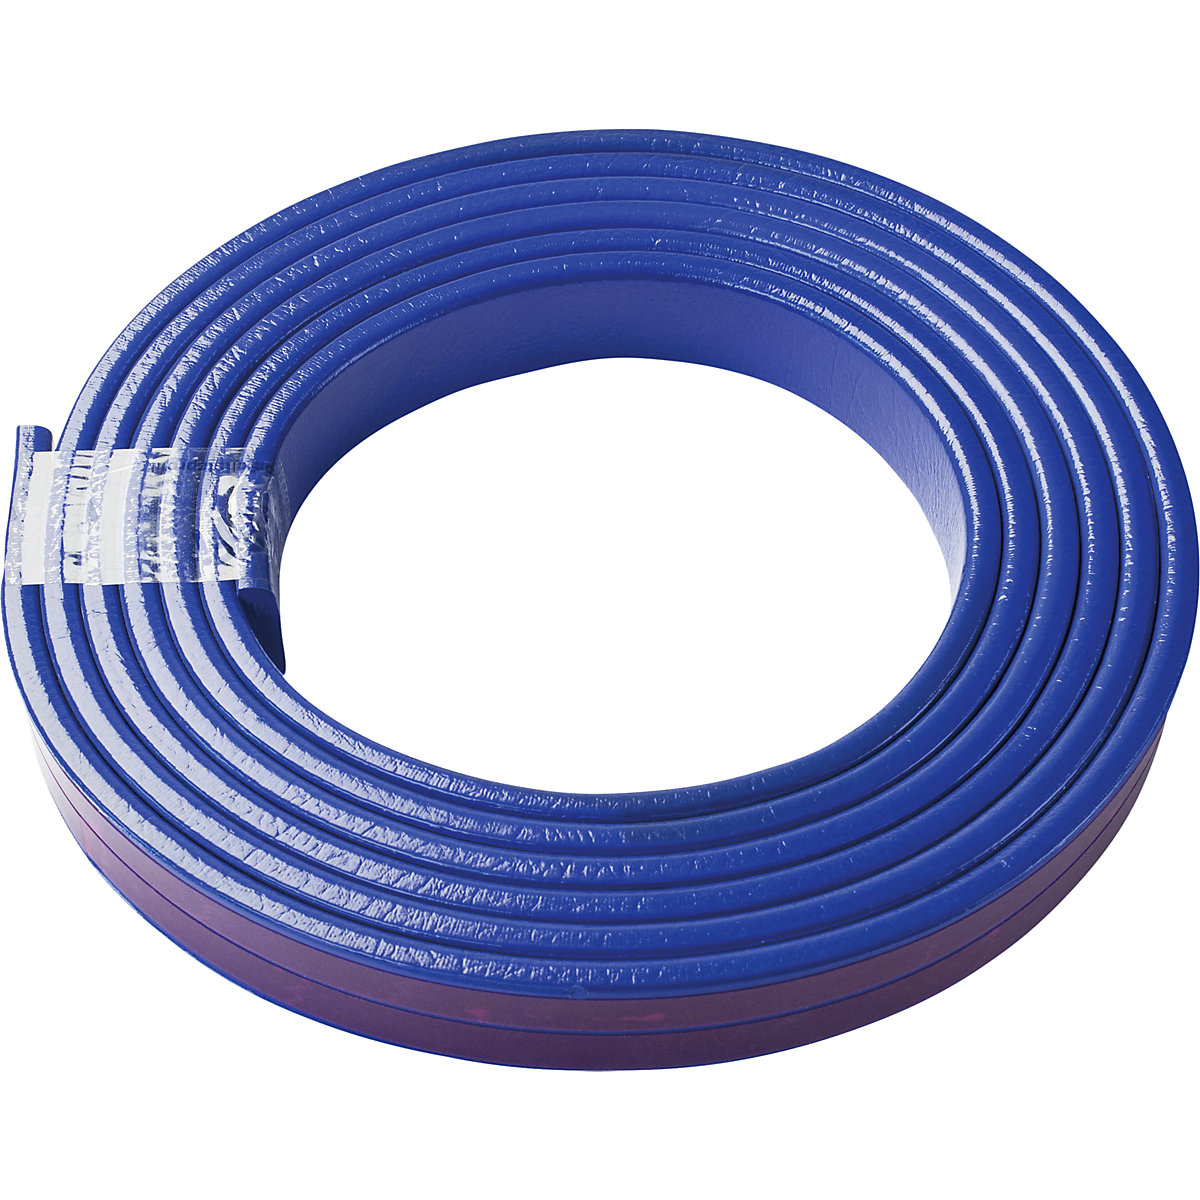 Knuffi®-oppervlaktebescherming – SHG, type F, 1 rol à 5 m, blauw-26